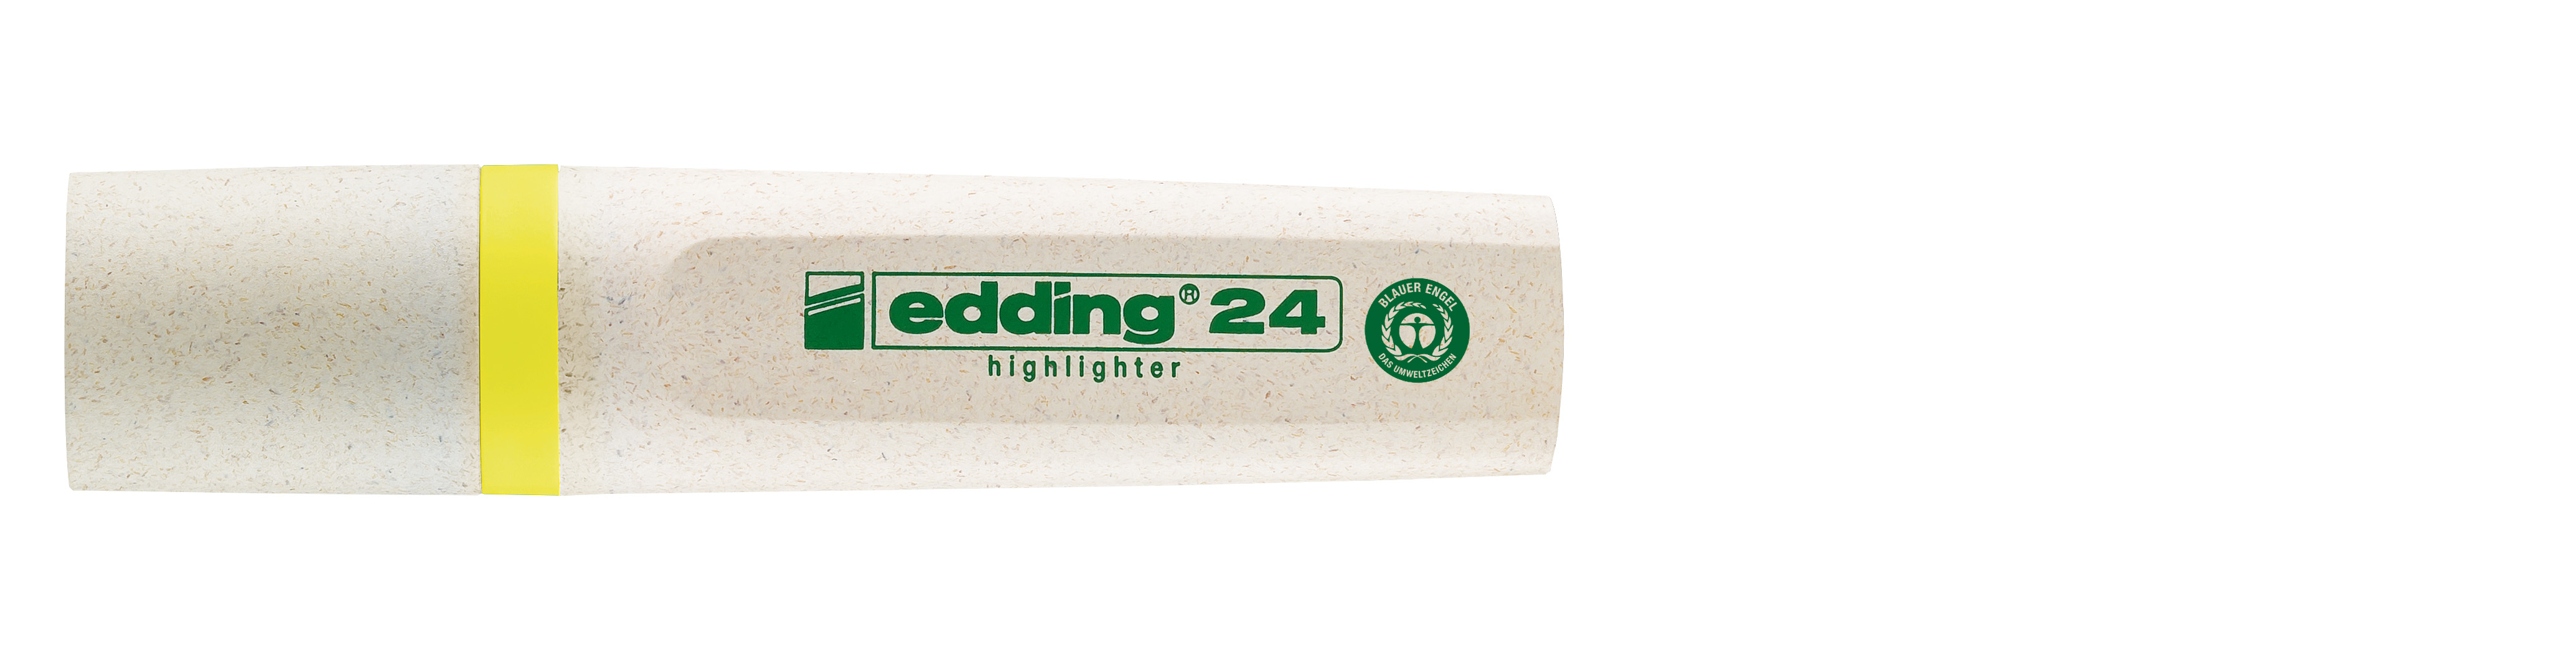 edding Textmarker Highlighter 24 EcoLine gelb